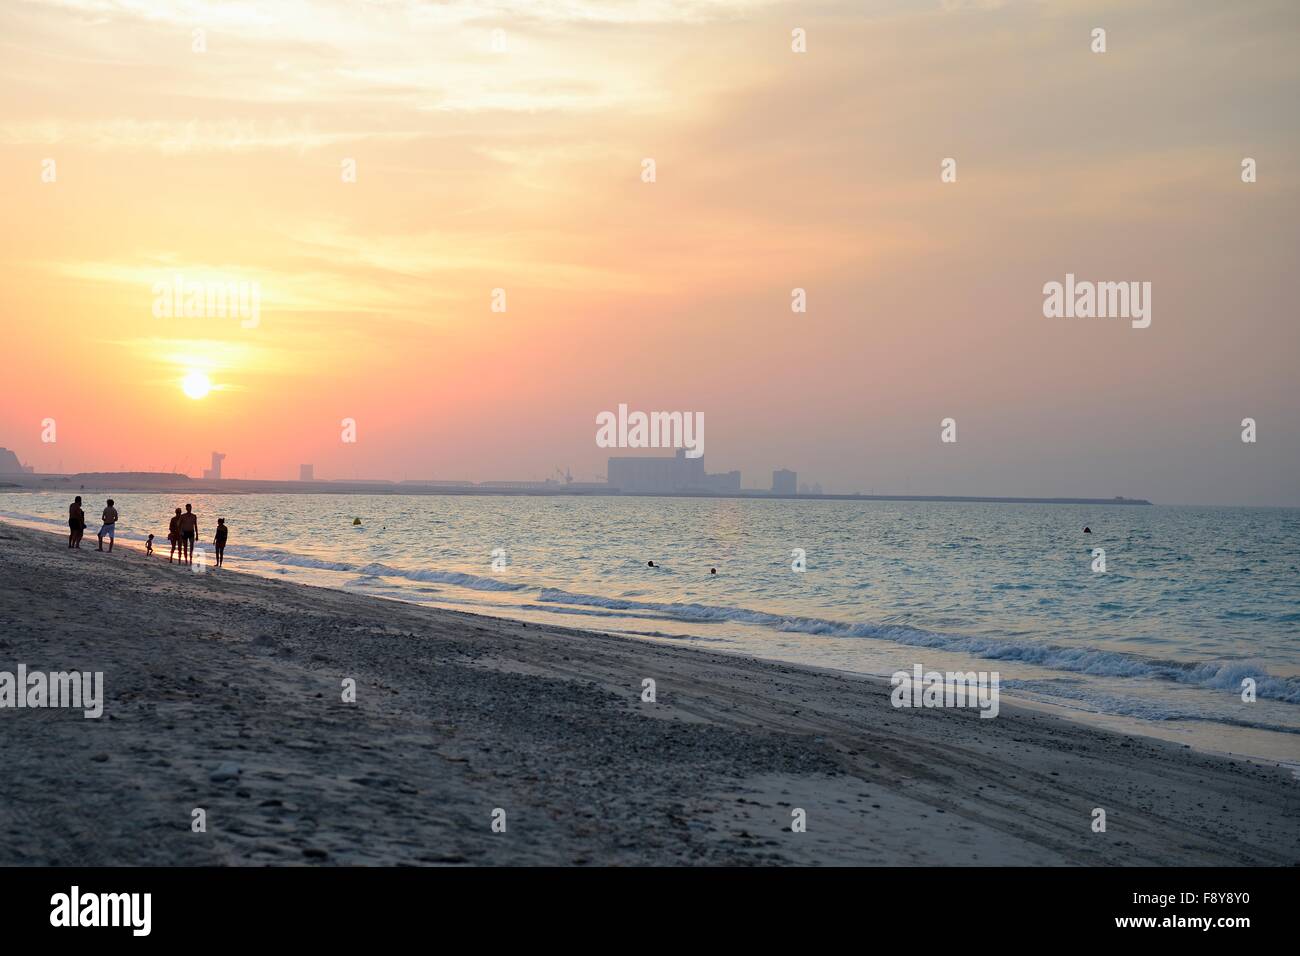 sunset on the beach, Stock Photo